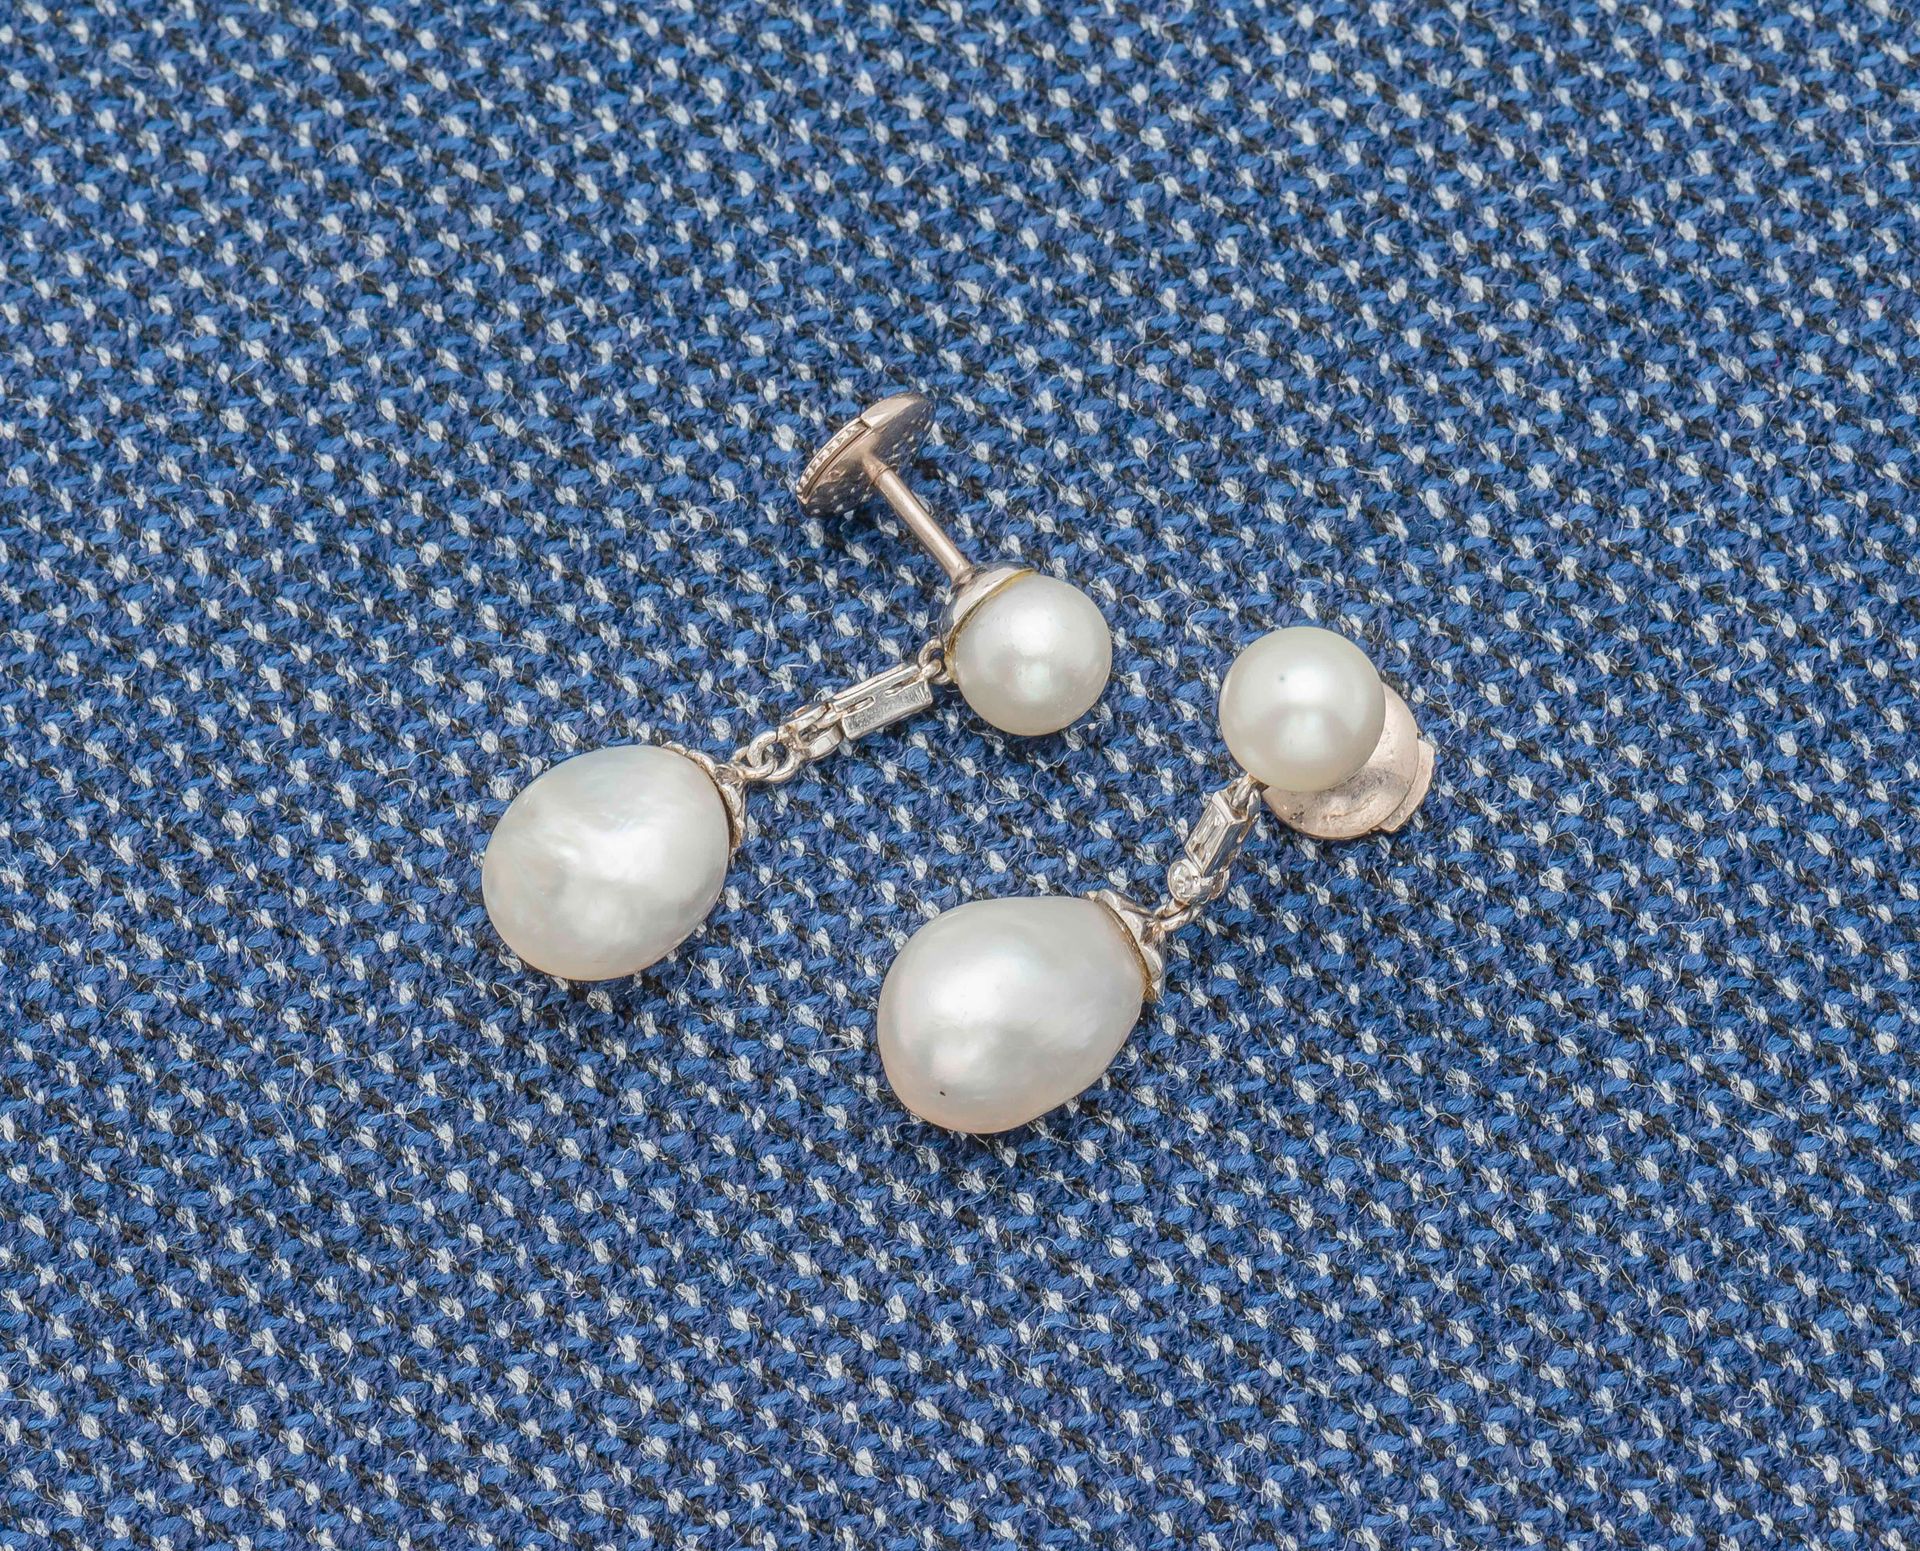 Null 
一对铂金（950‰）和18K金耳环，每只耳环上都有一颗圆形的珍珠，托着一颗可能是精美的巴洛克式水滴珍珠，中间穿插着两颗钻石，一颗是长方形的，另一颗是&hellip;